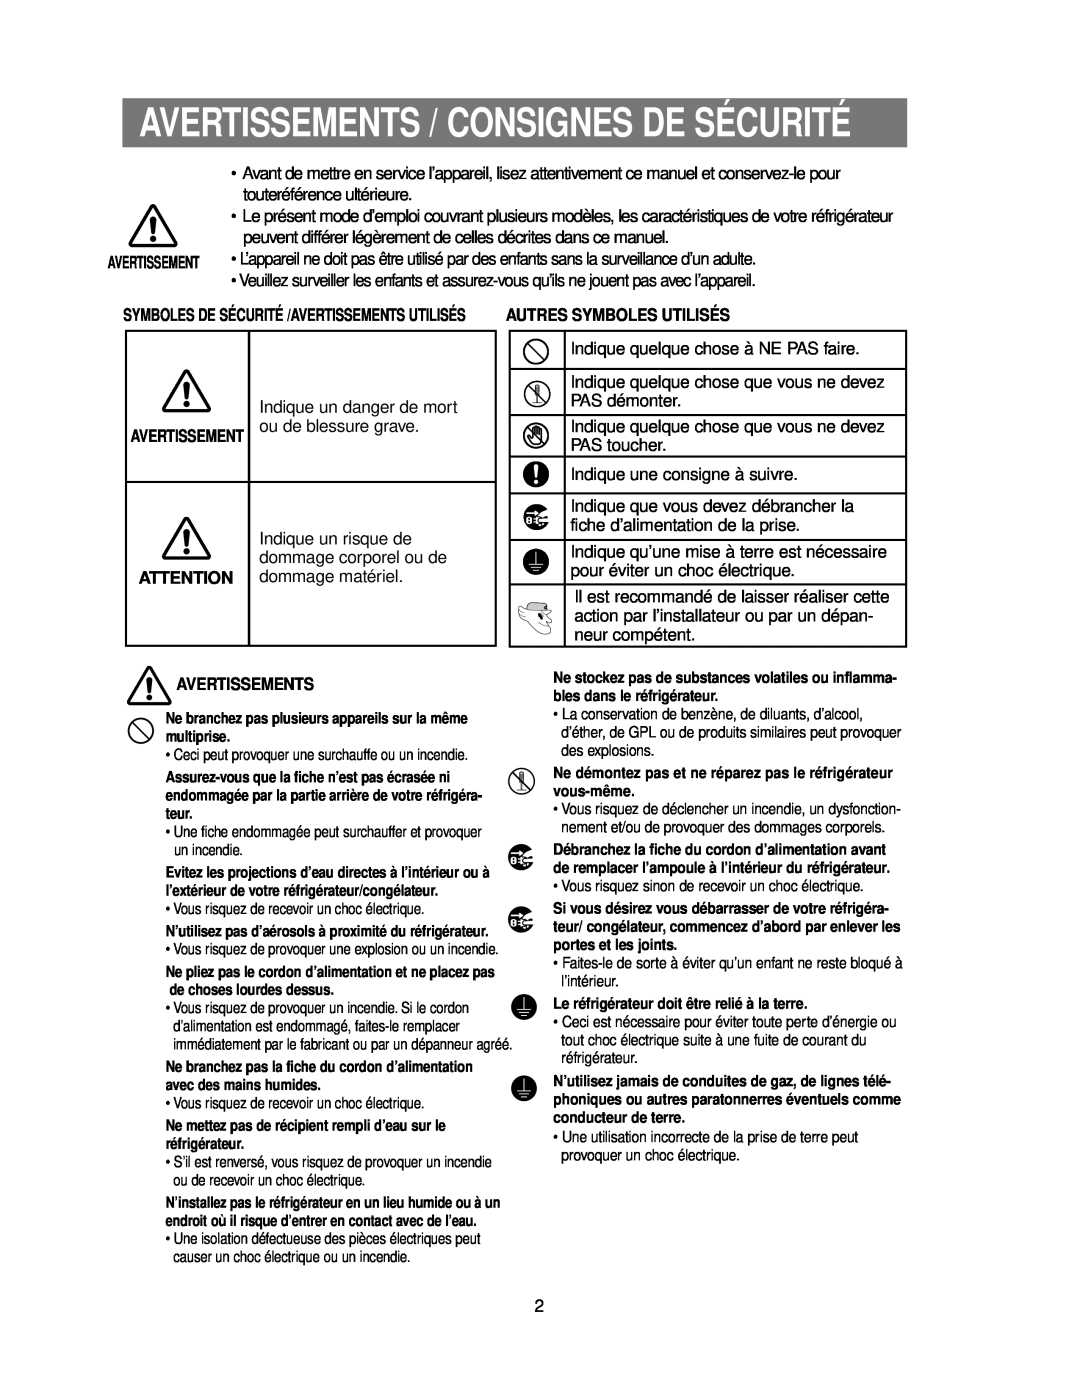 Samsung RS24KASW1/CAF manual Avertissements / Consignes De Sécurité, Autres Symboles Utilisés 